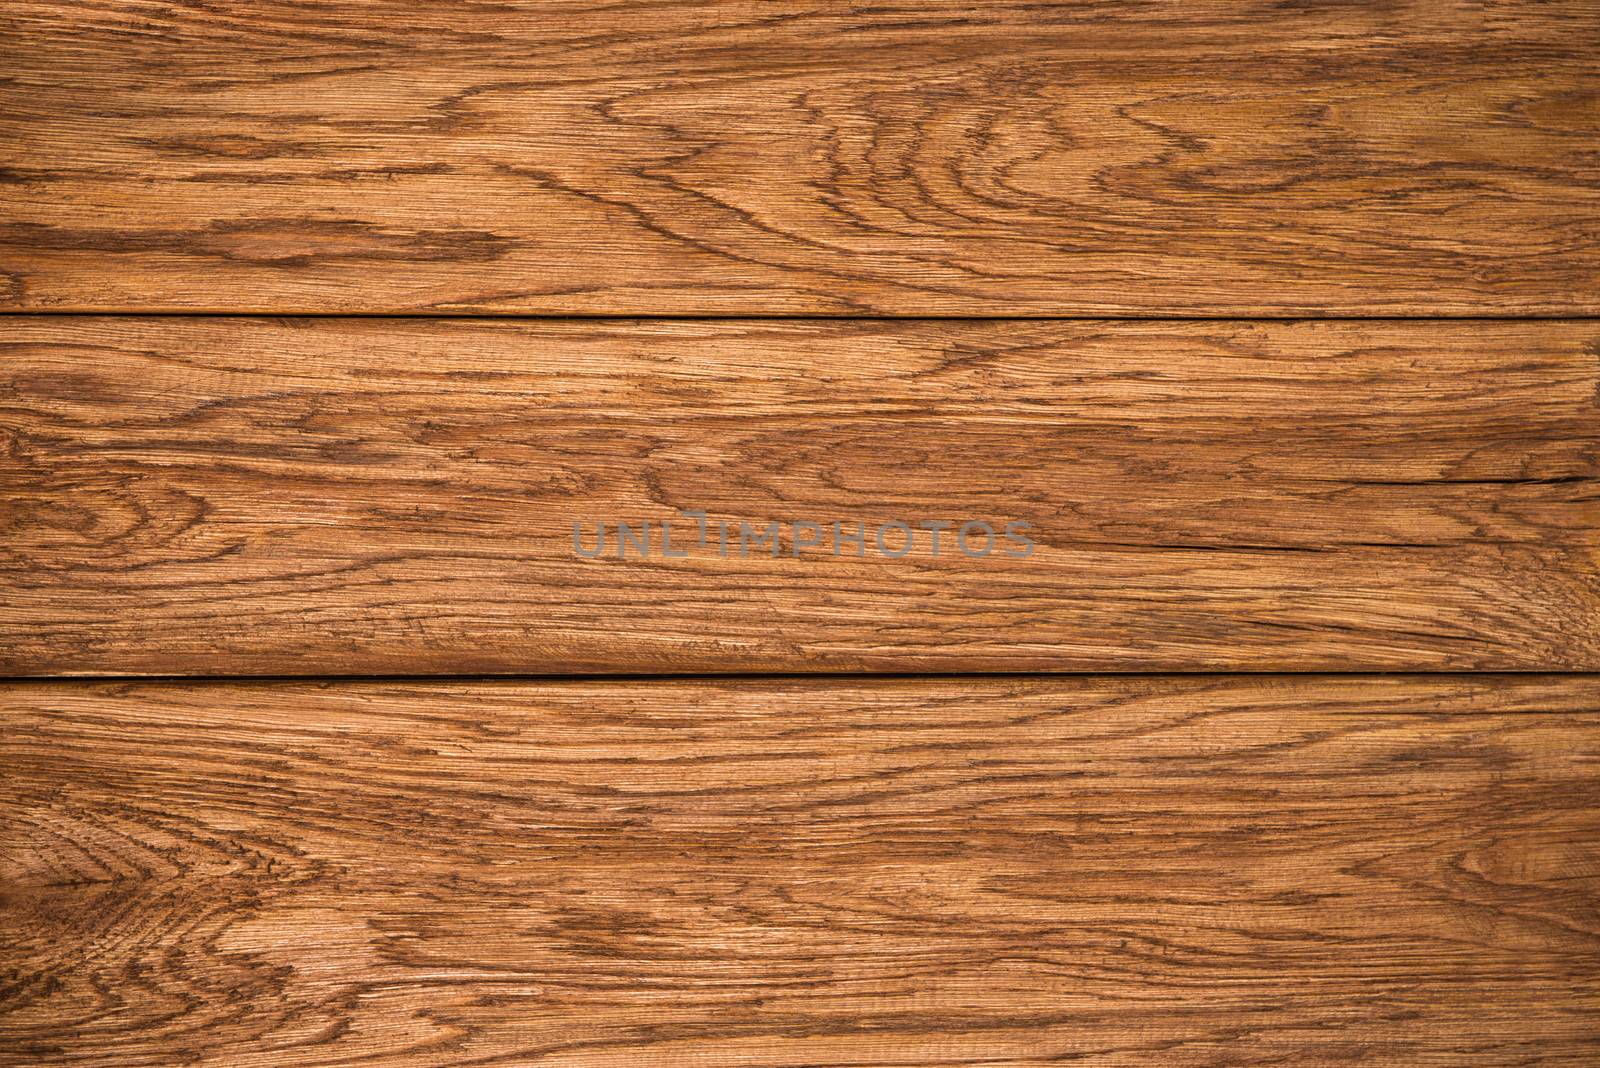 Wooden planks texture, oak, closeup high resolution